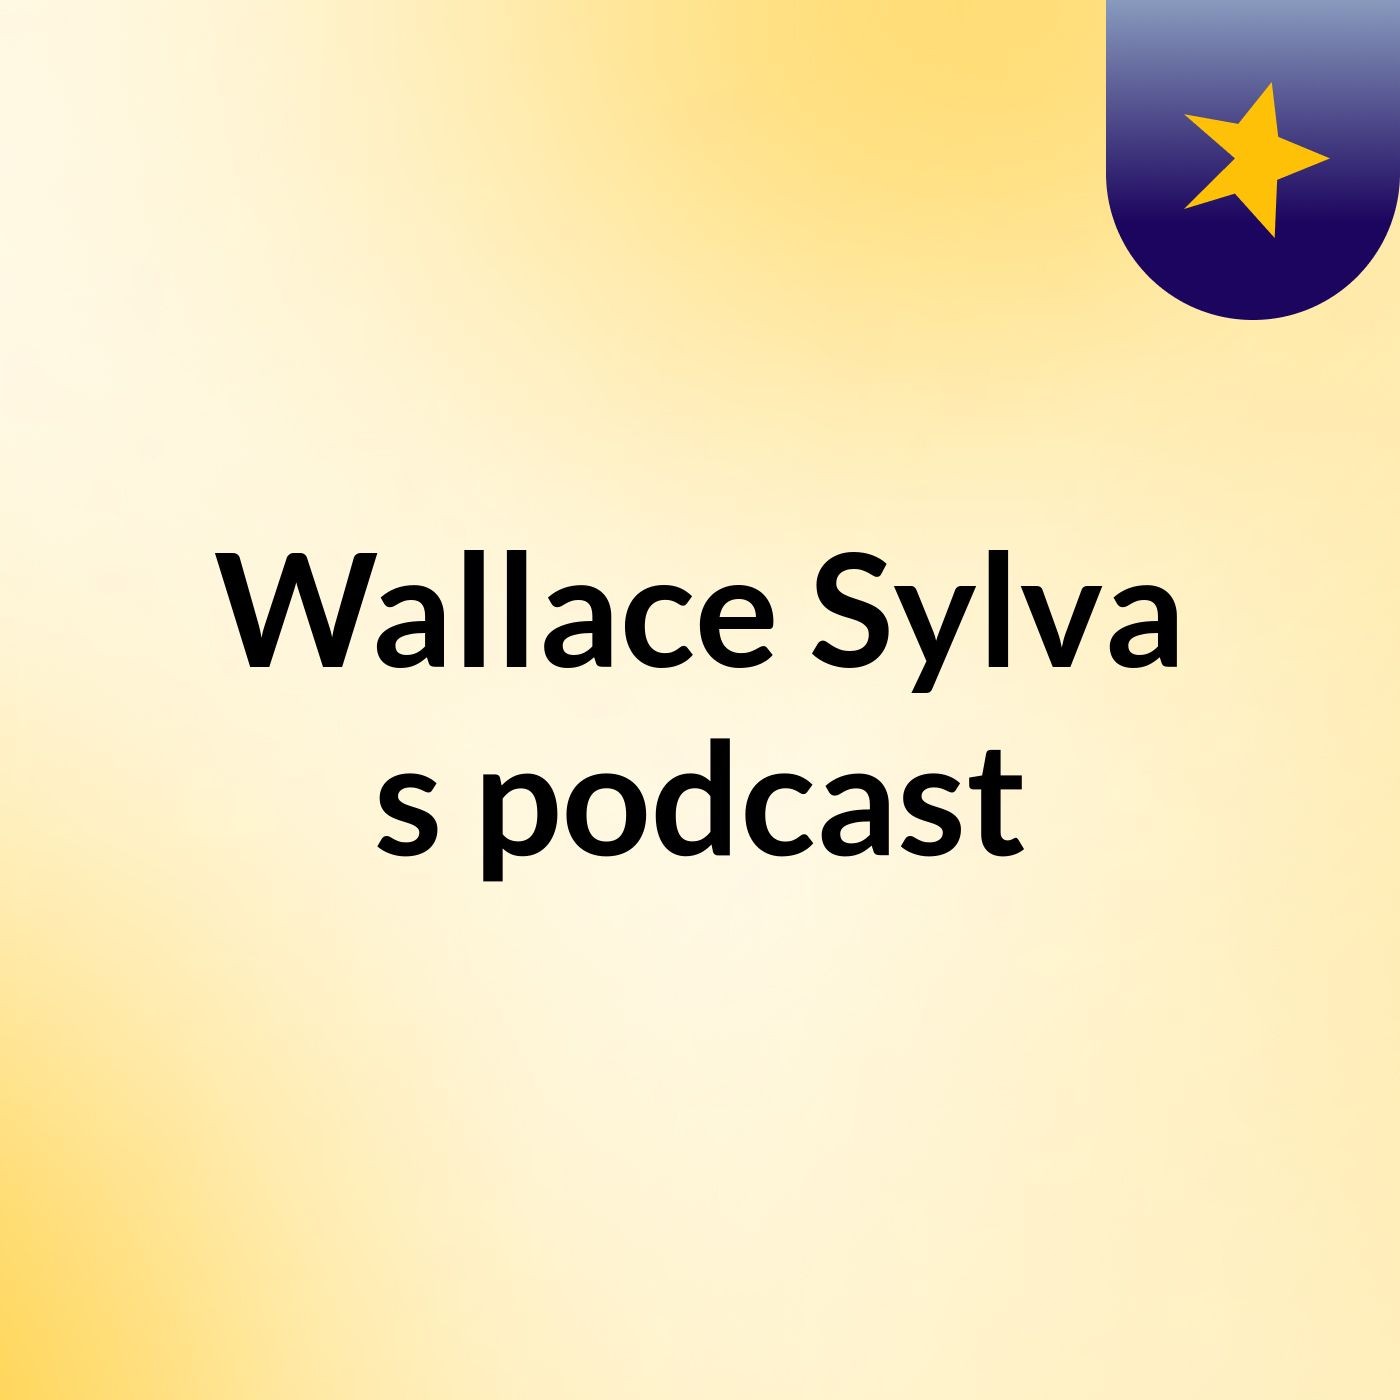 Wallace Sylva's podcast